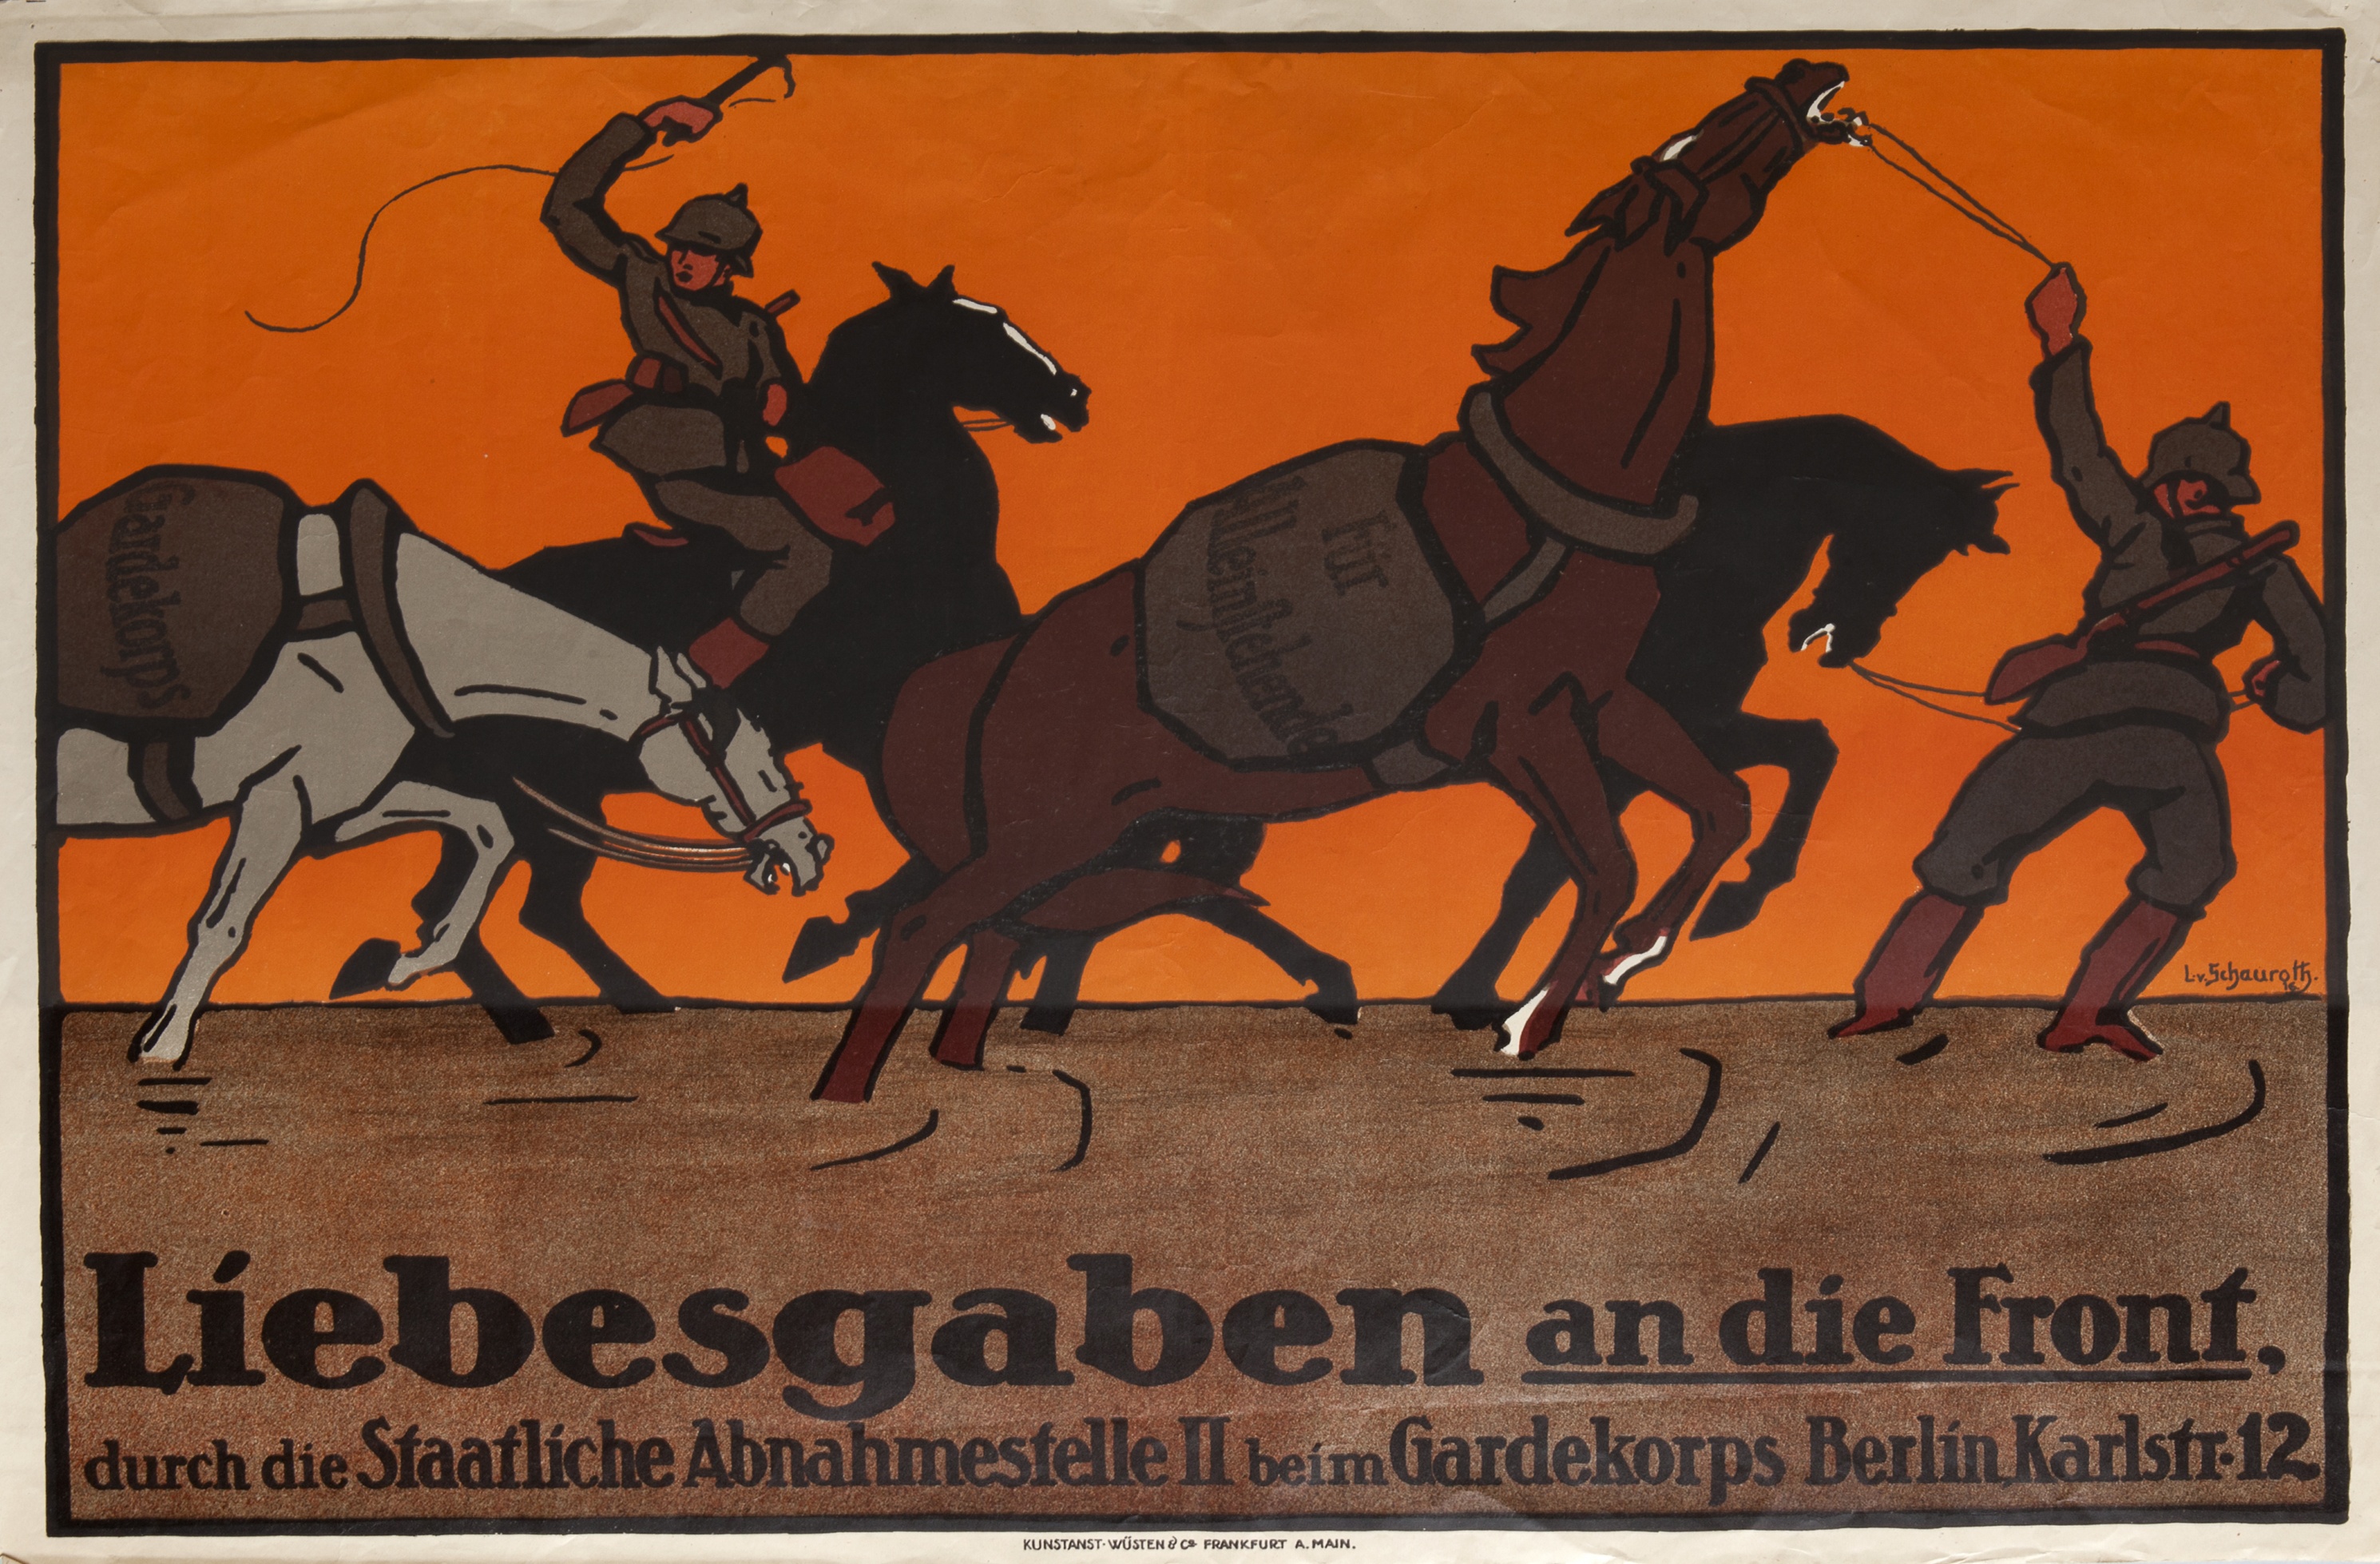 Liebesgaben an die Front, durch die Staatliche Abnahmestelle II beim Gardekorps Berlin Karlstr. 12 (Gutenberg-Museum CC BY-NC-SA)